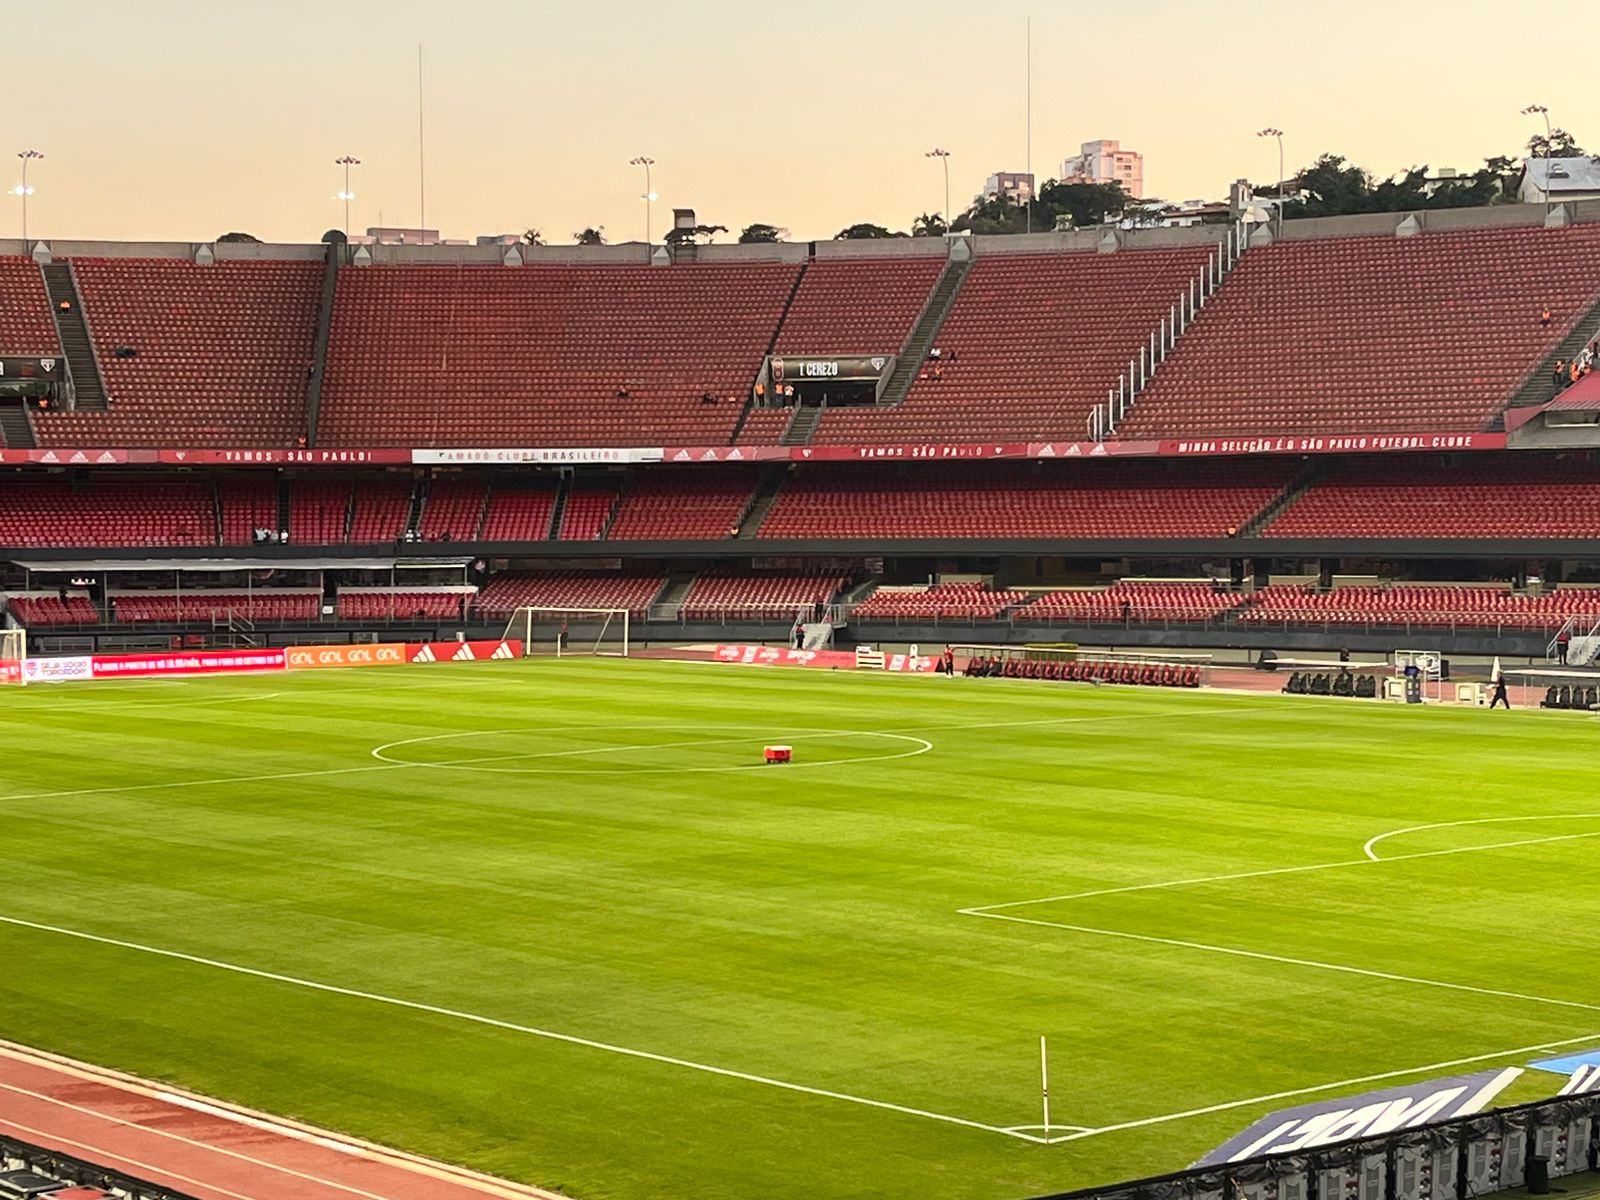 São Paulo x Grêmio, AO VIVO, Campeonato Brasileiro 2023